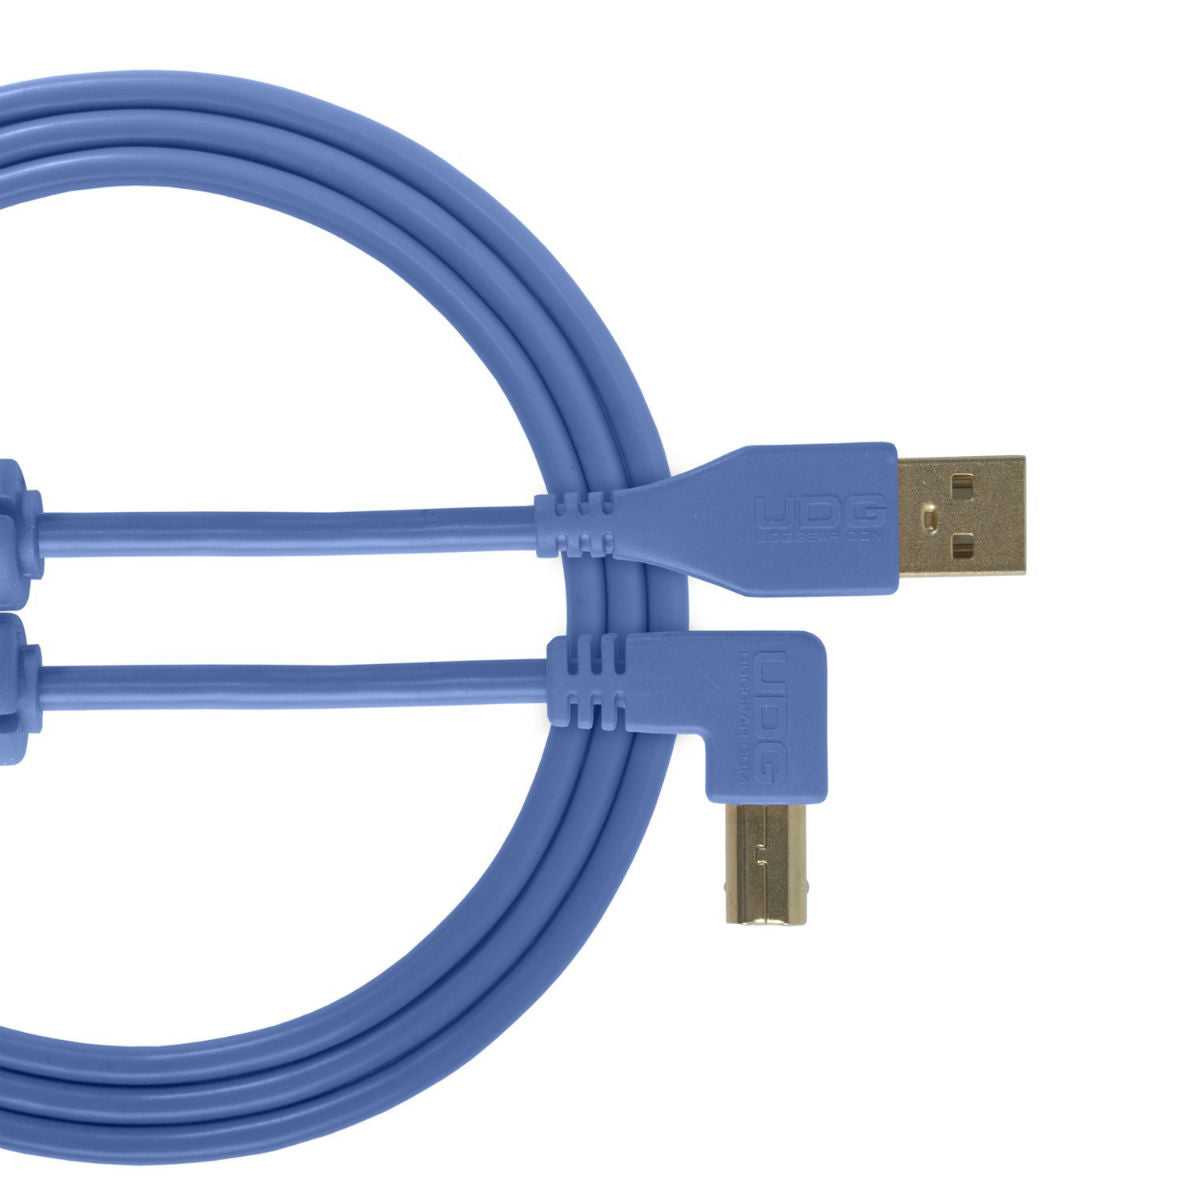 UDG USB Cable A-B 3m Blue Angled U95006LB